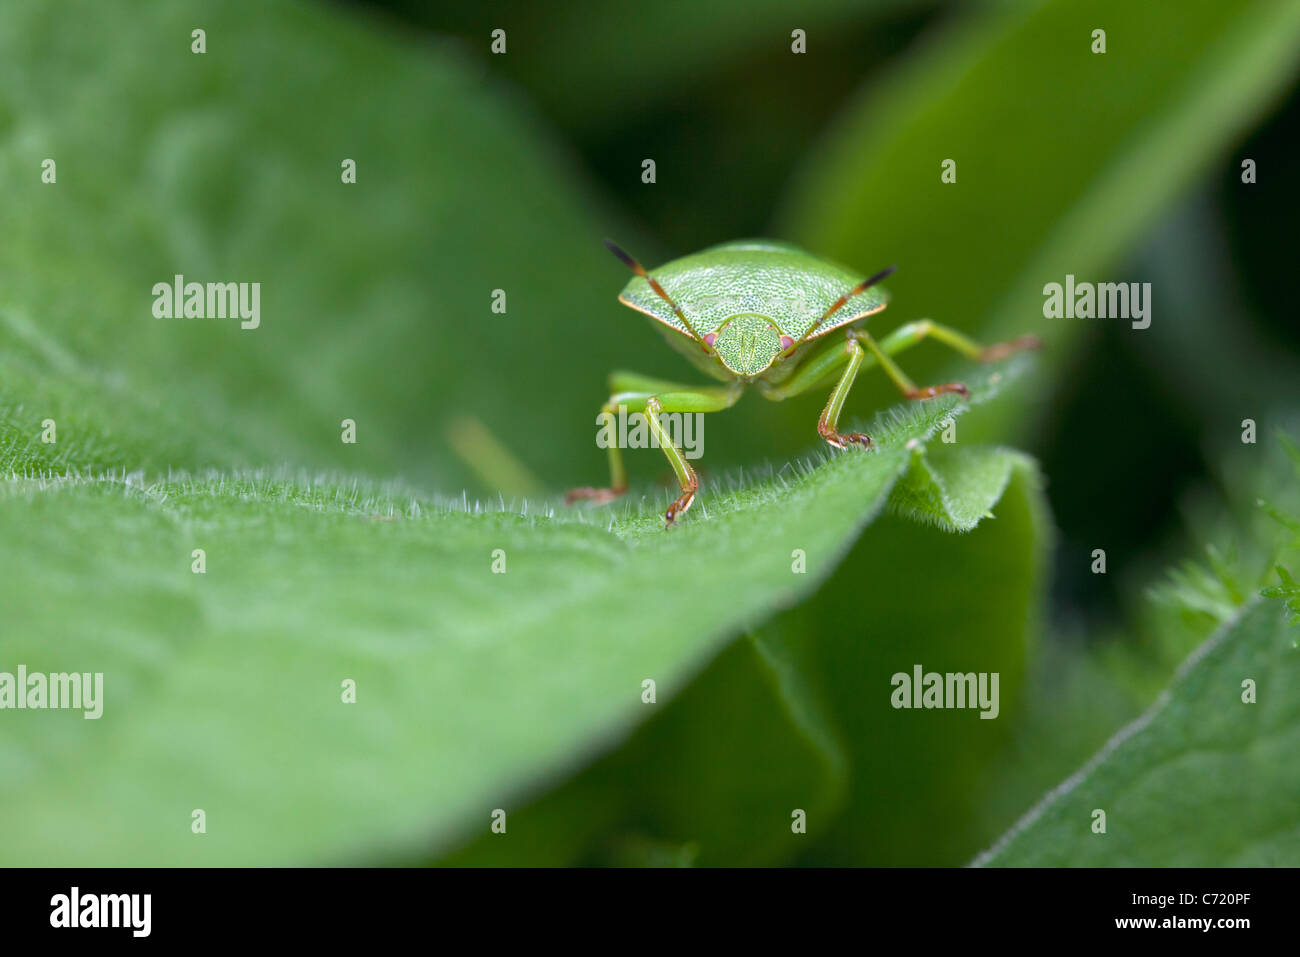 Green stink bug on leaf, close-up Banque D'Images